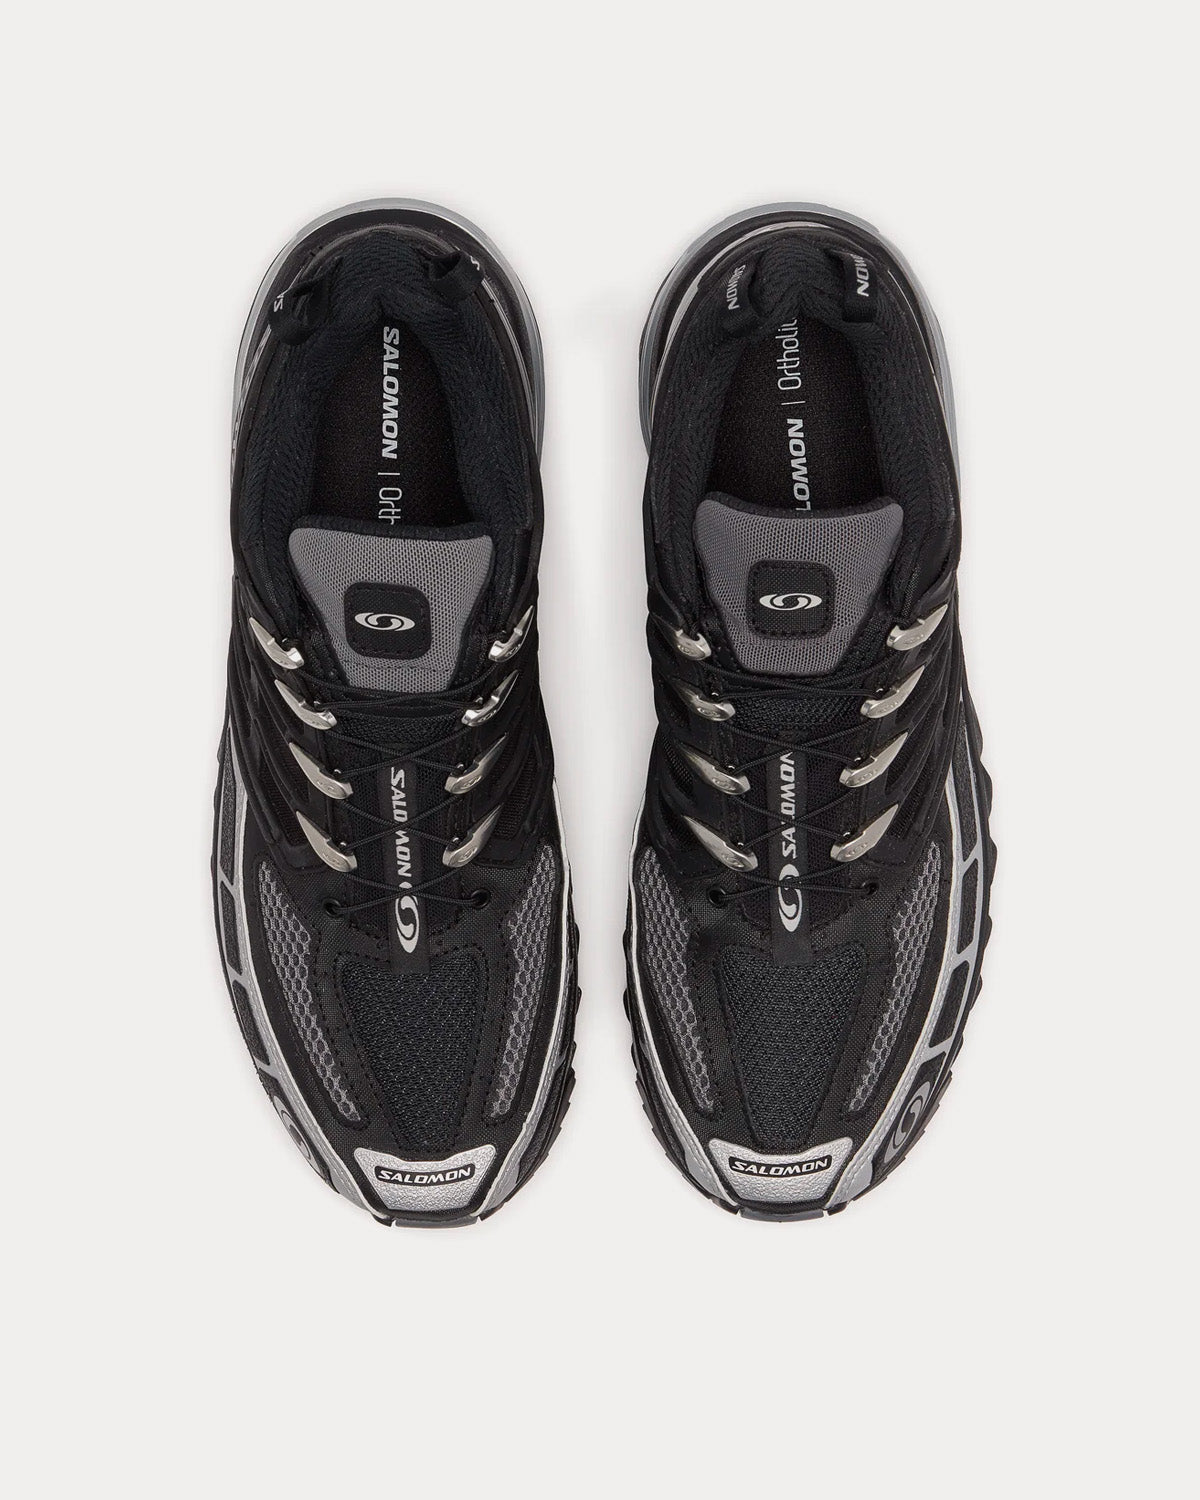 Salomon x DSM - ACS Pro Black / Silver Low Top Sneakers